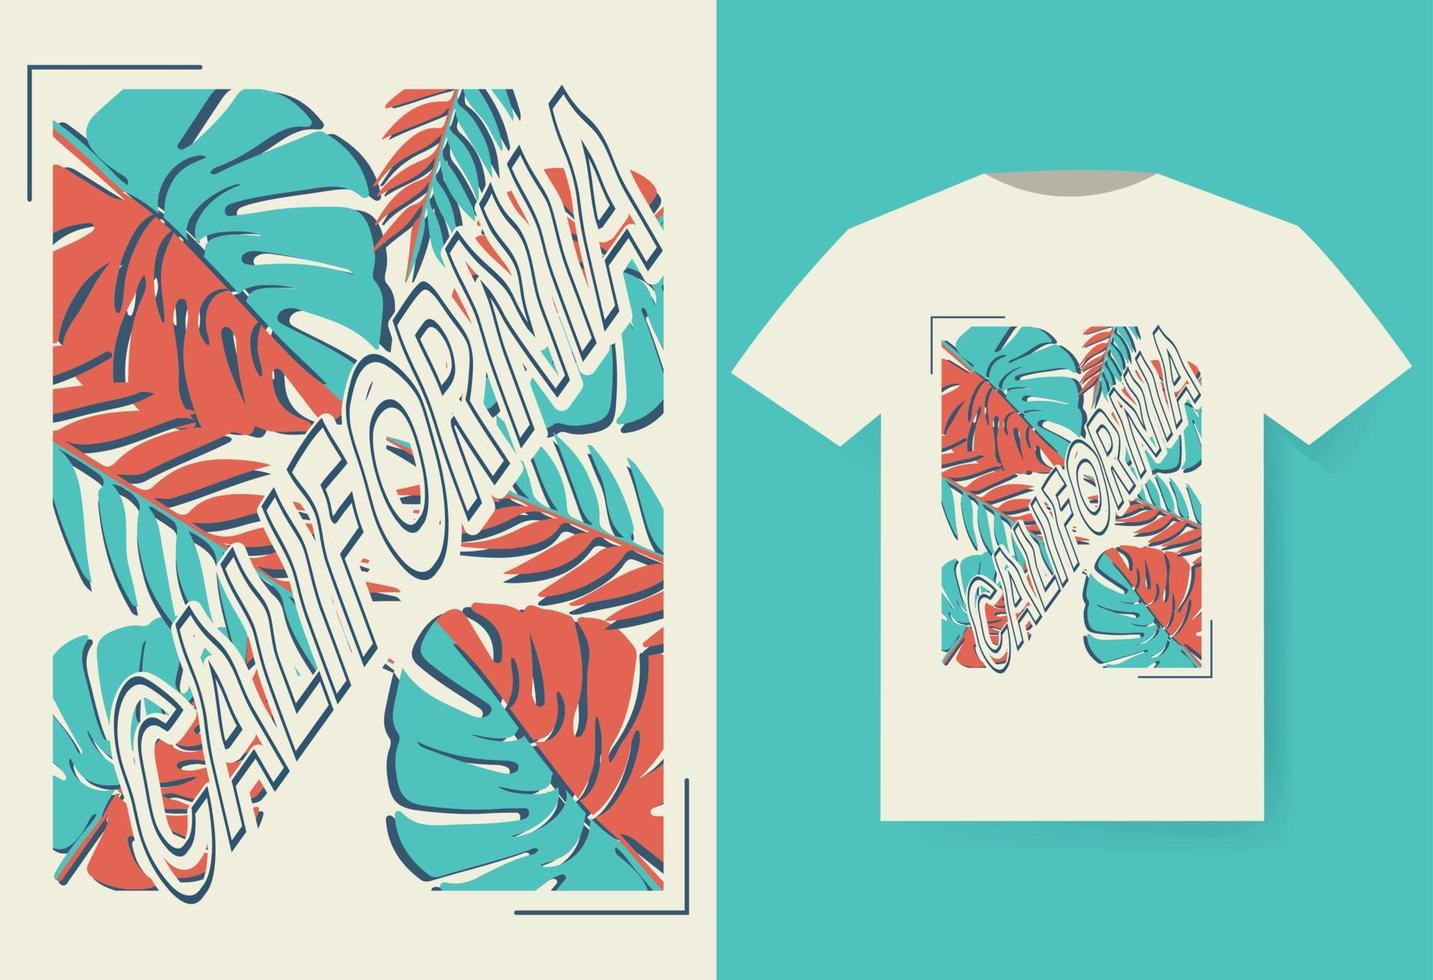 conception de t-shirt d'été, conception de t-shirt california beach vecteur